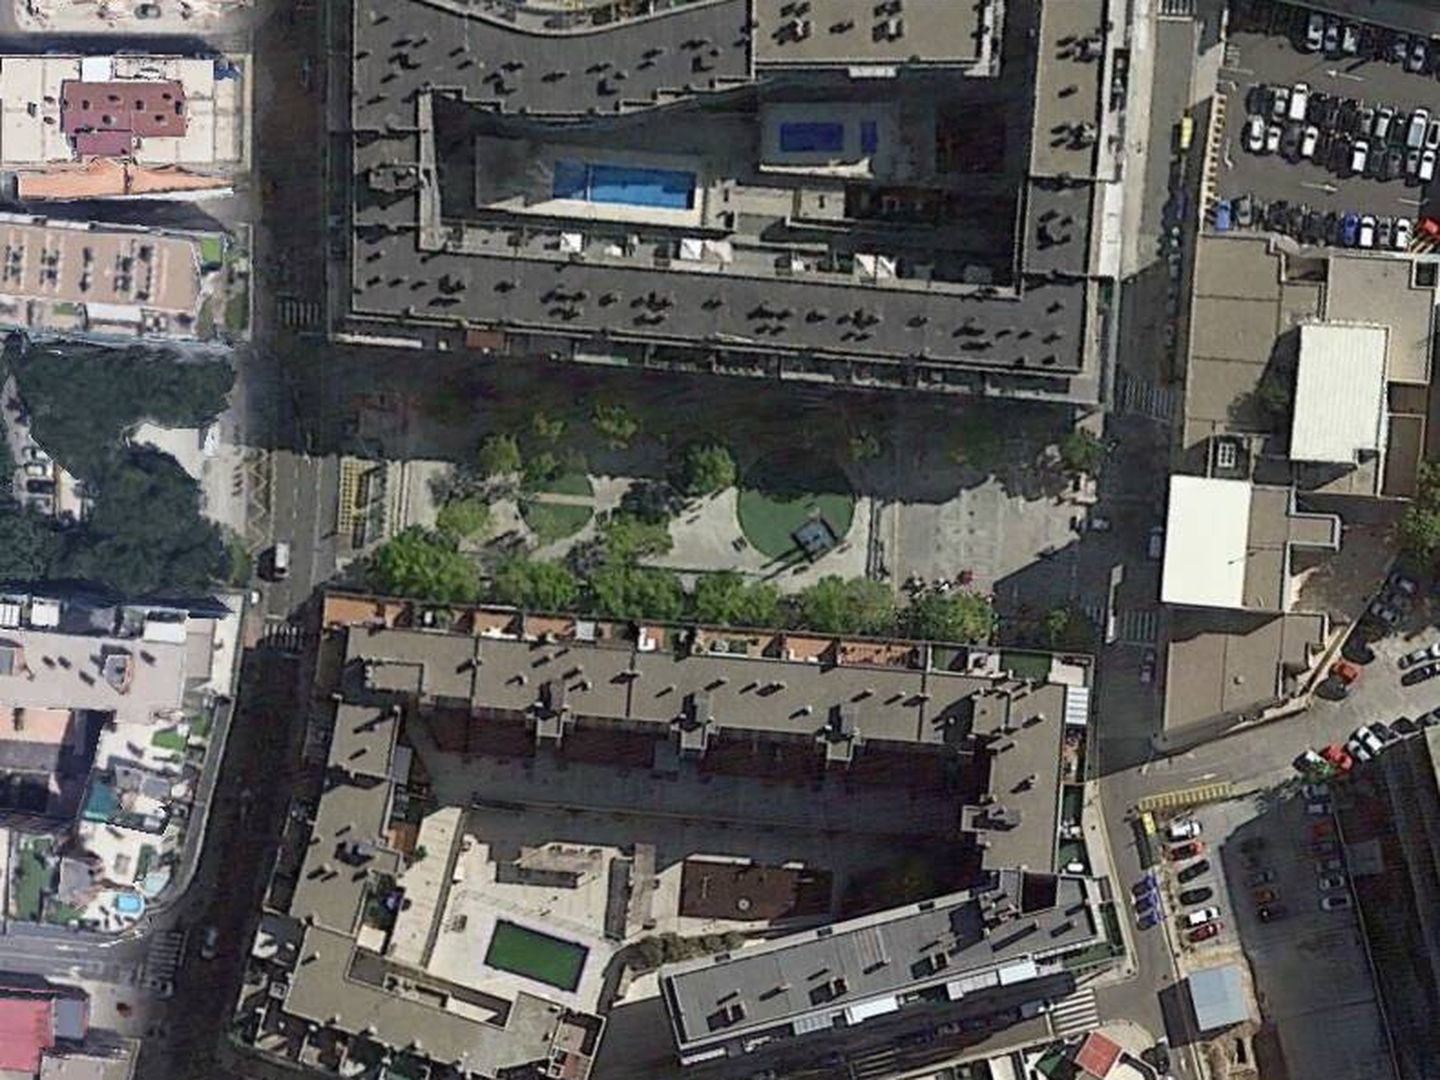 Vista aérea de la zona donde se ubica el ático que se subasta. (Google Earth)